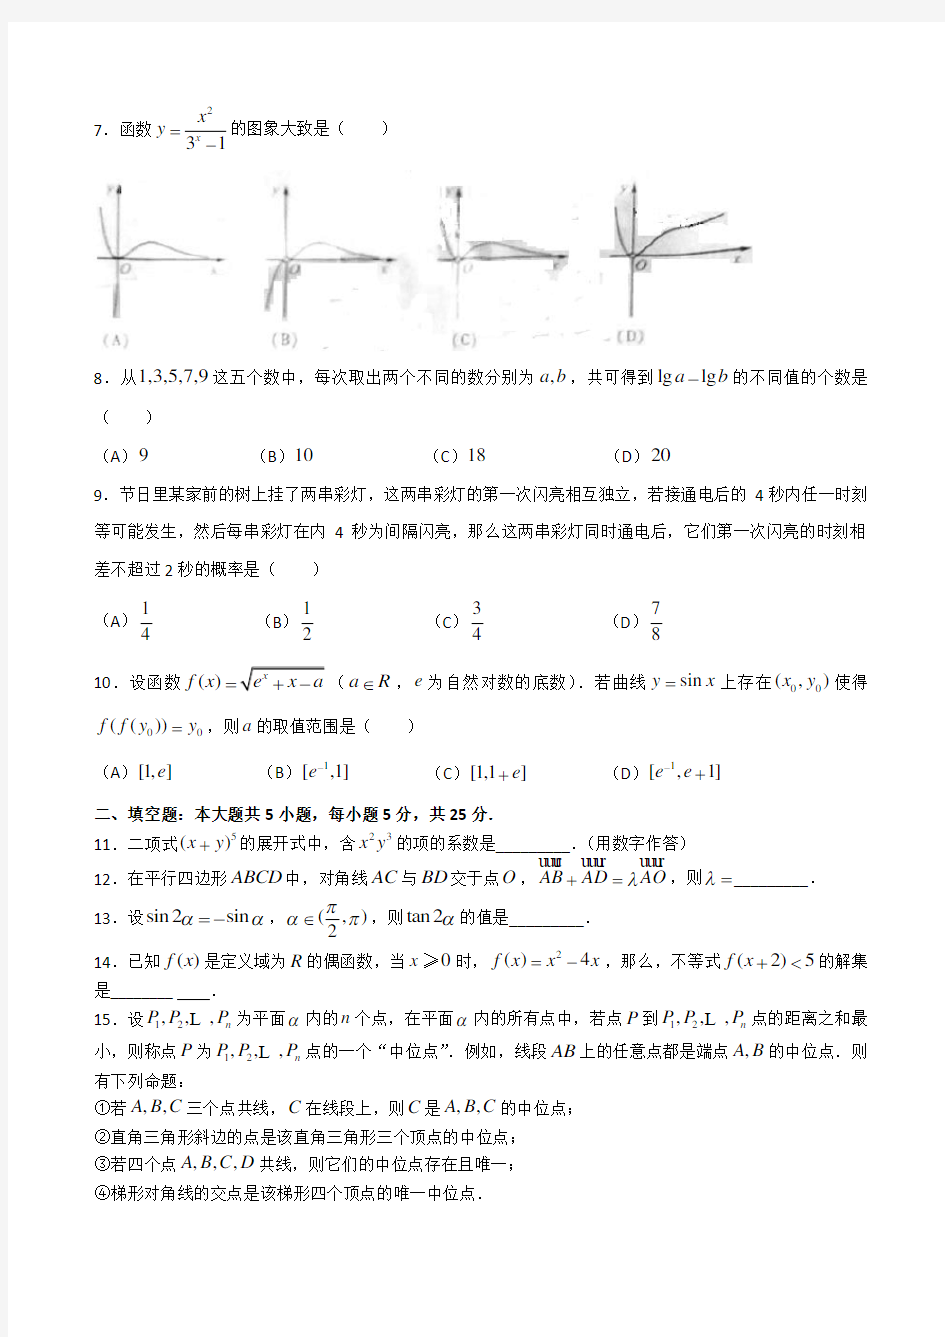 2013年高考试题：理科数学(四川卷)_中小学教育网